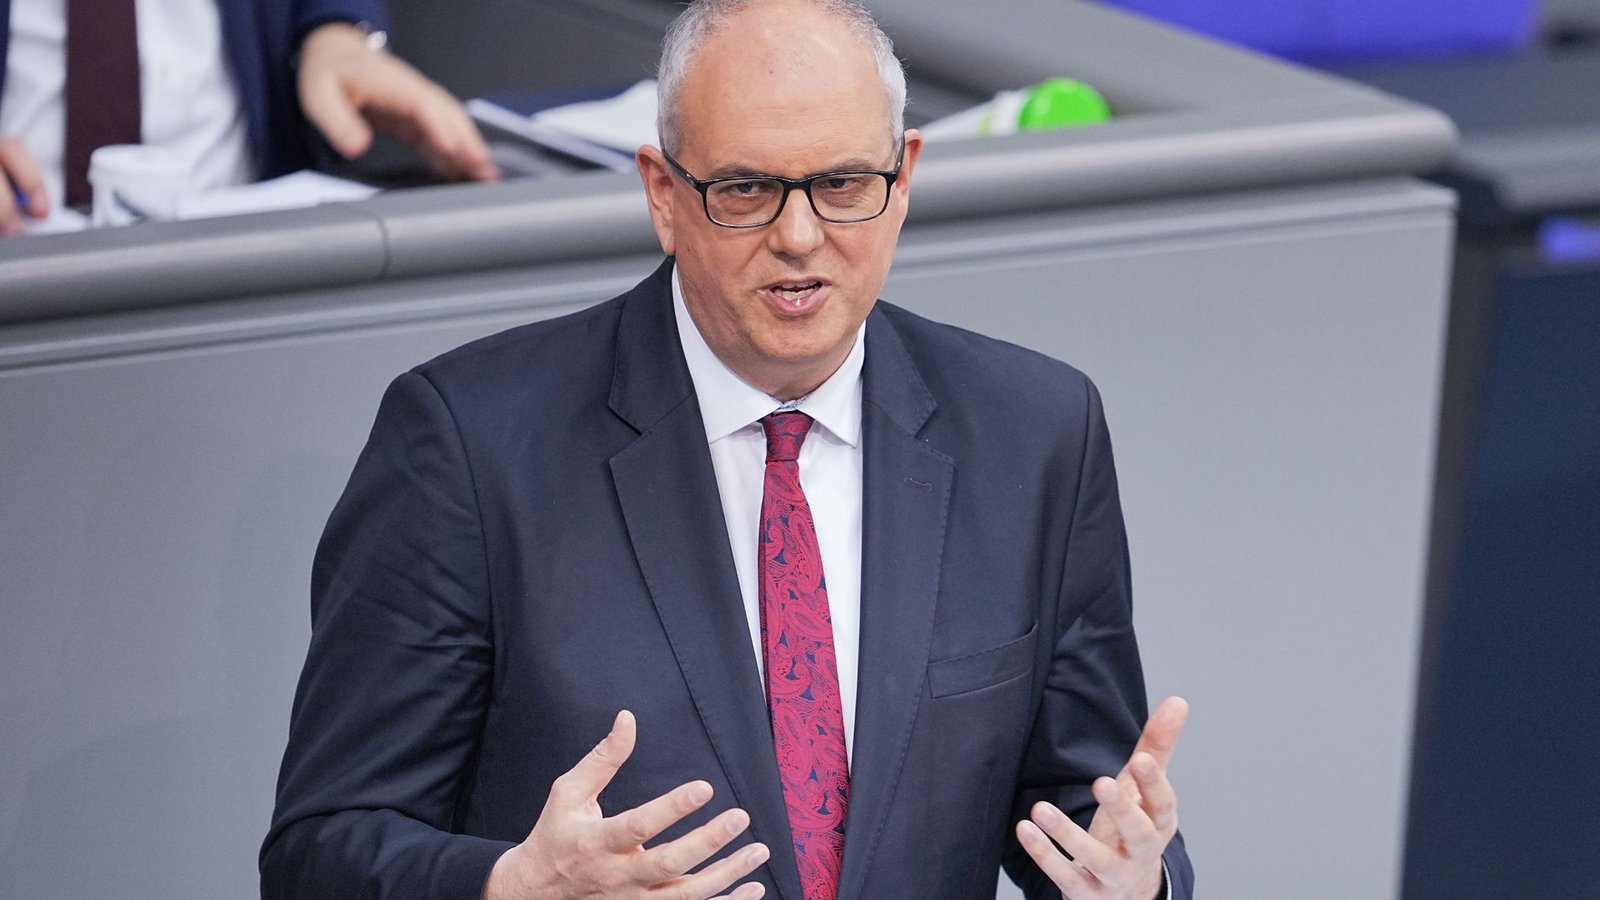 Bremens Bürgermeister Andreas Bovenschulte (SPD). Bremen kündigt ein "Nein" zum Steuerentlastungsgesetz an.Foto: Michael Kappeler/dpa